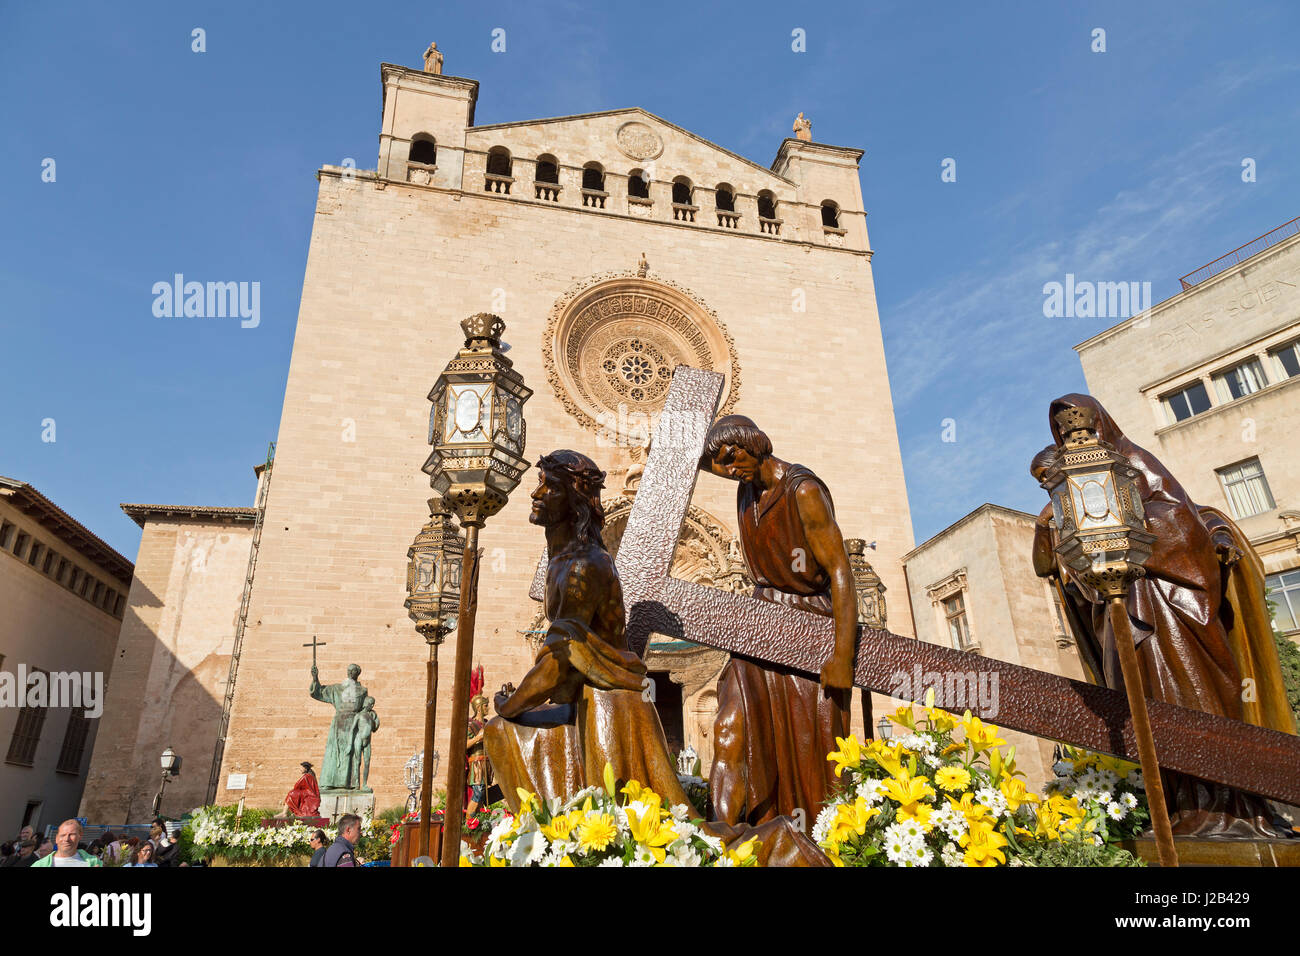 Basilica de Sant Francesc in Palma de Mallorca, Spain Stock Photo